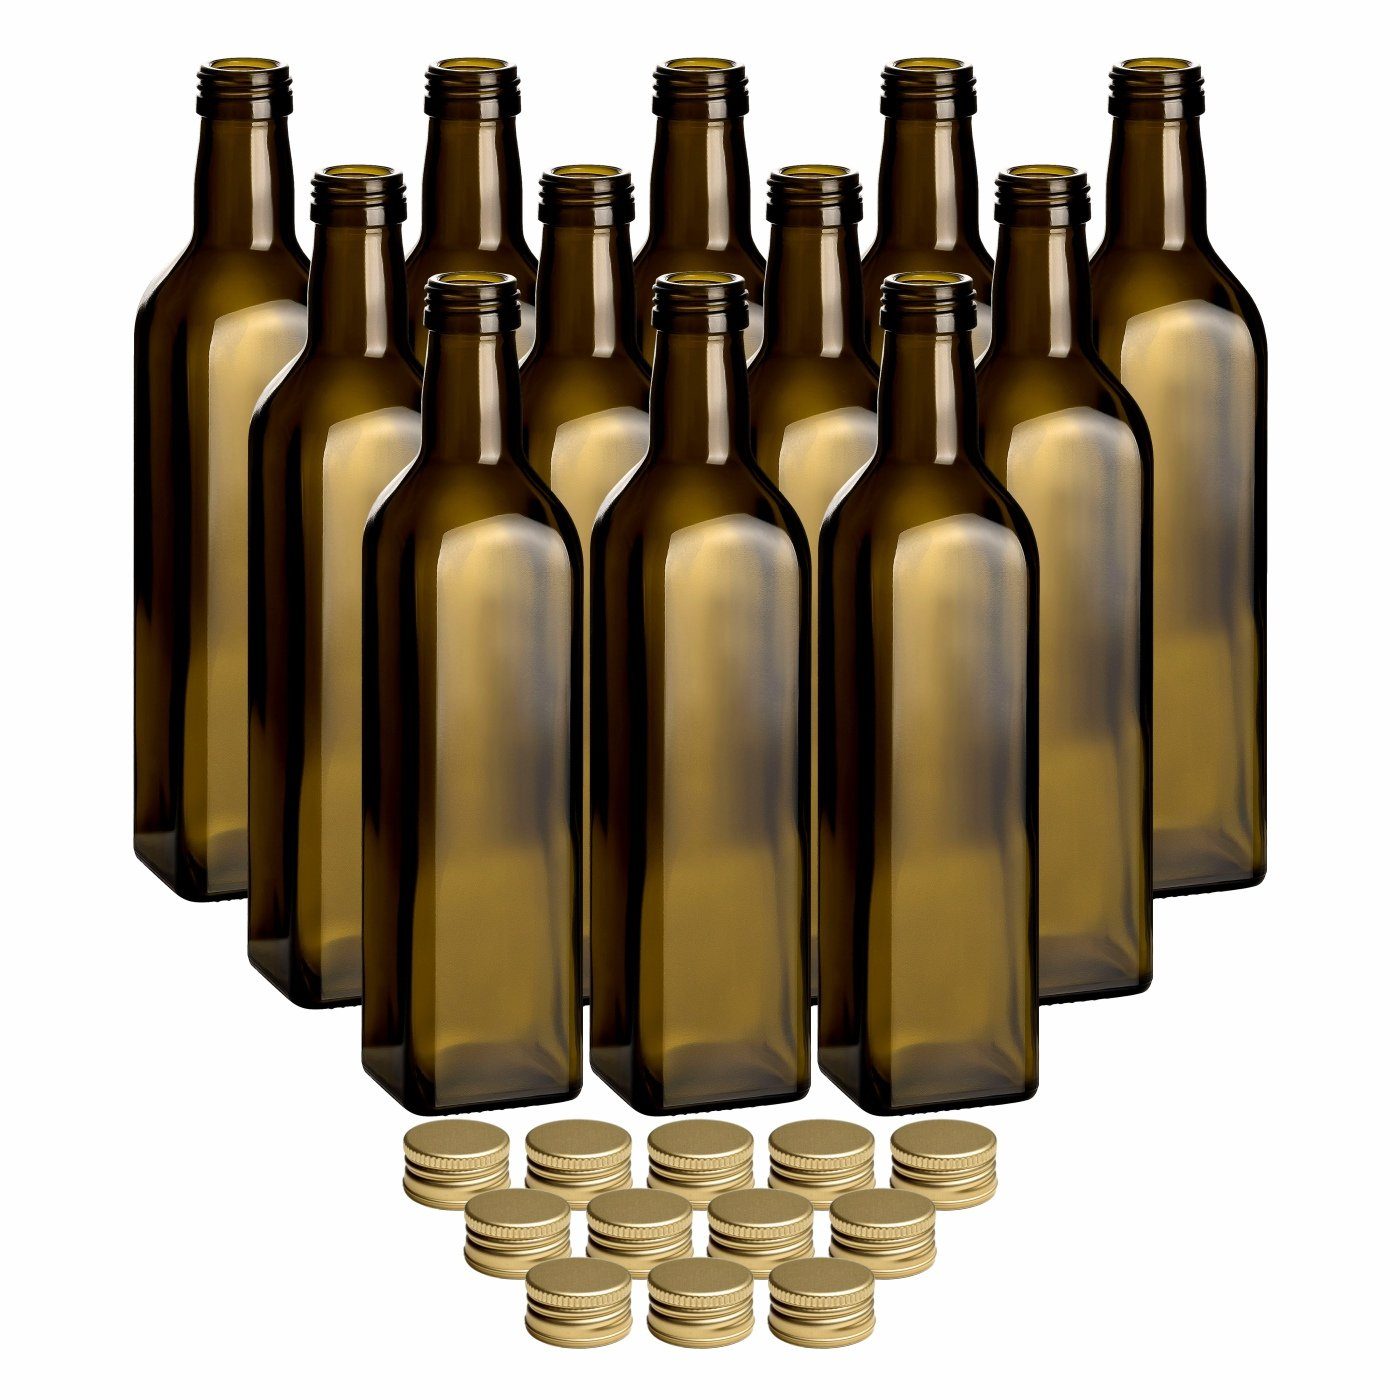 gouveo Trinkflasche Glasflaschen 500 ml Maraska -Antik- mit Schraub-Deckel - Grüne Flasche, 12er Set, goldfarben | Trinkflaschen